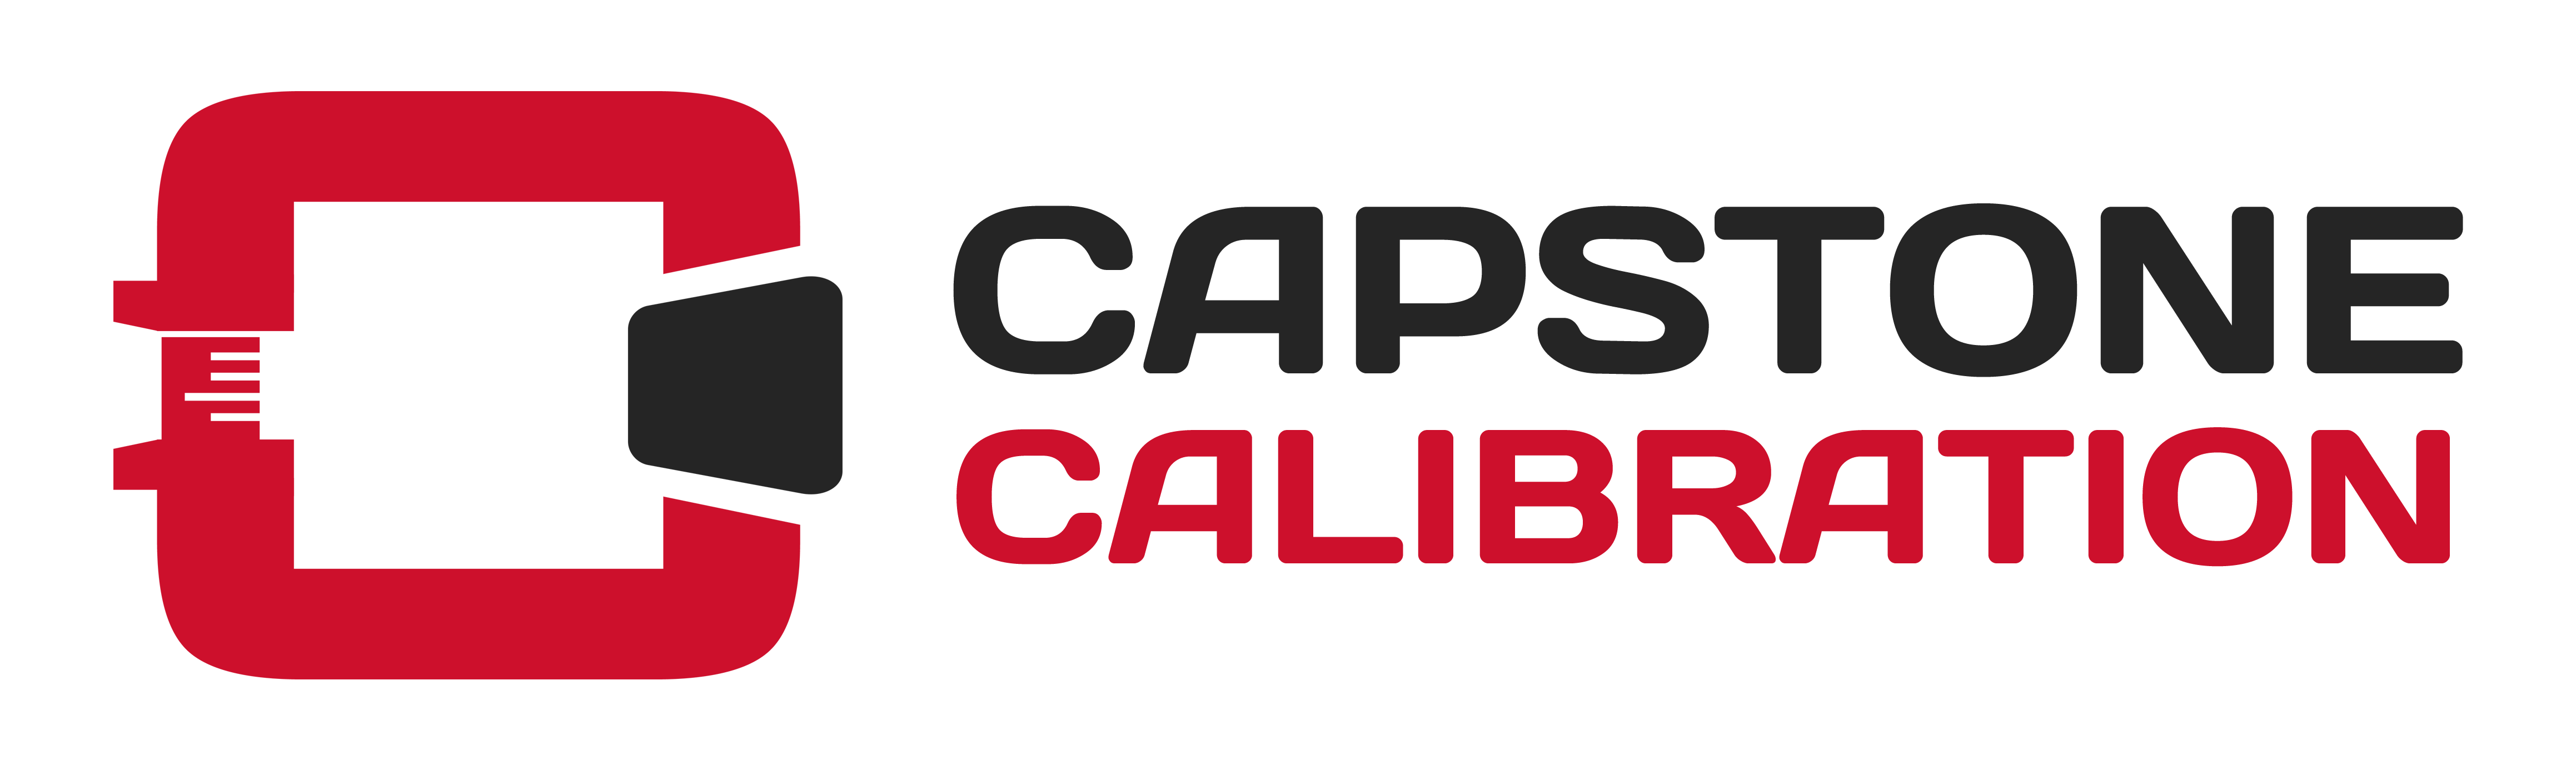 CapstoneCalibration-logo-horizontal-border